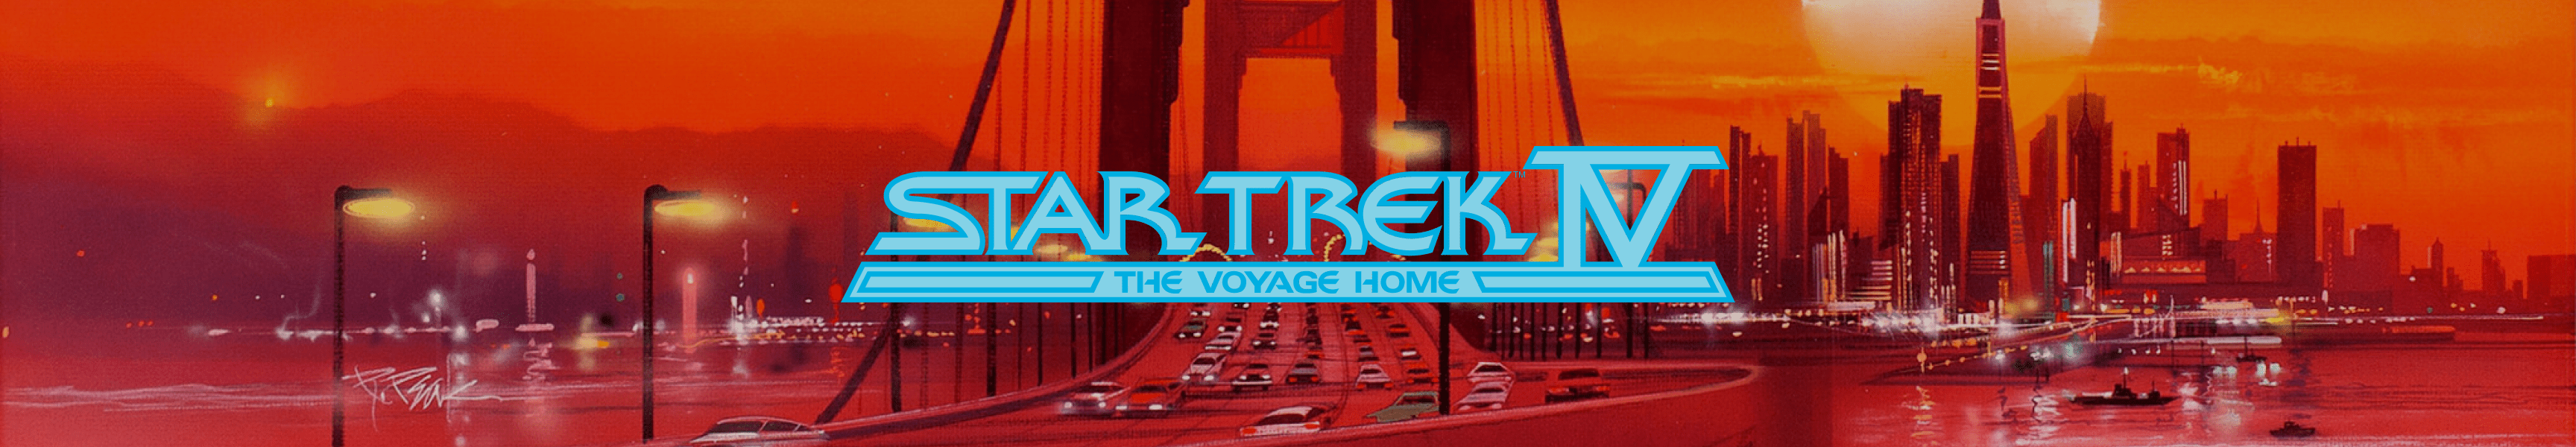 Star Trek IV: La maison de voyage